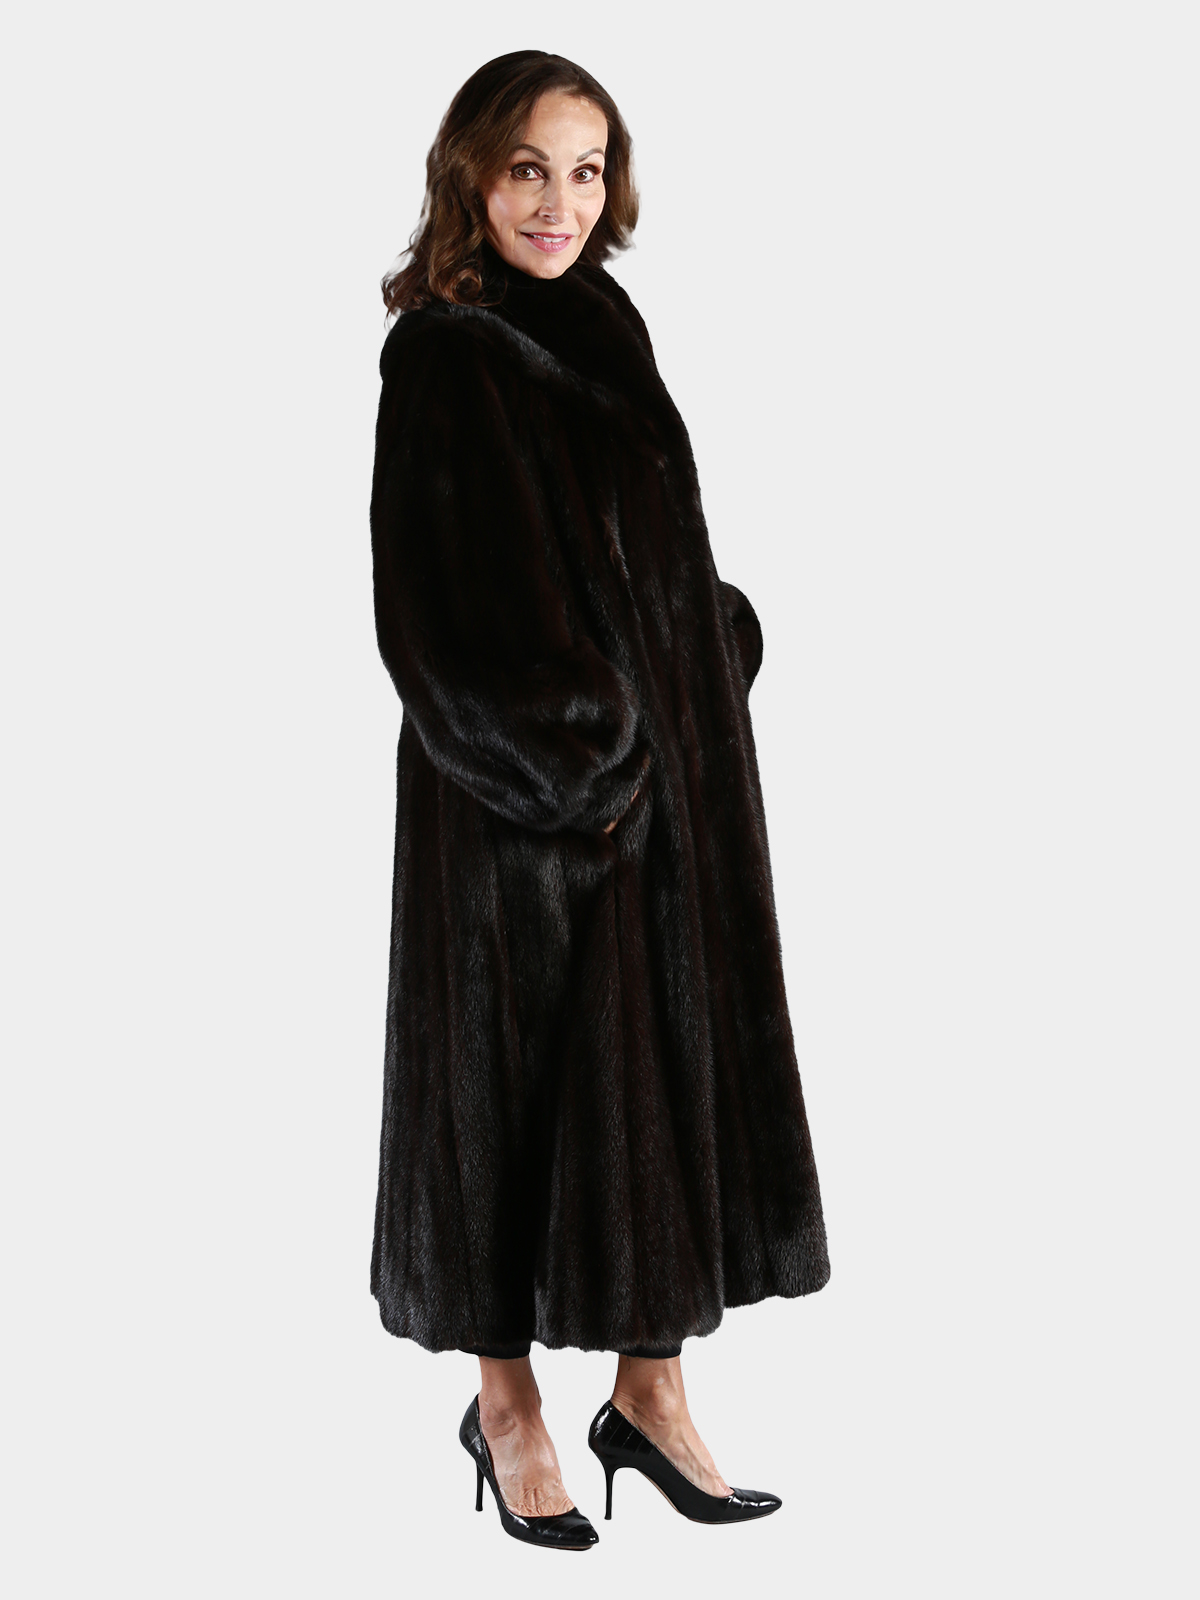 Woman's Deep Mahogany Female Mink Fur Coat - Estate Furs